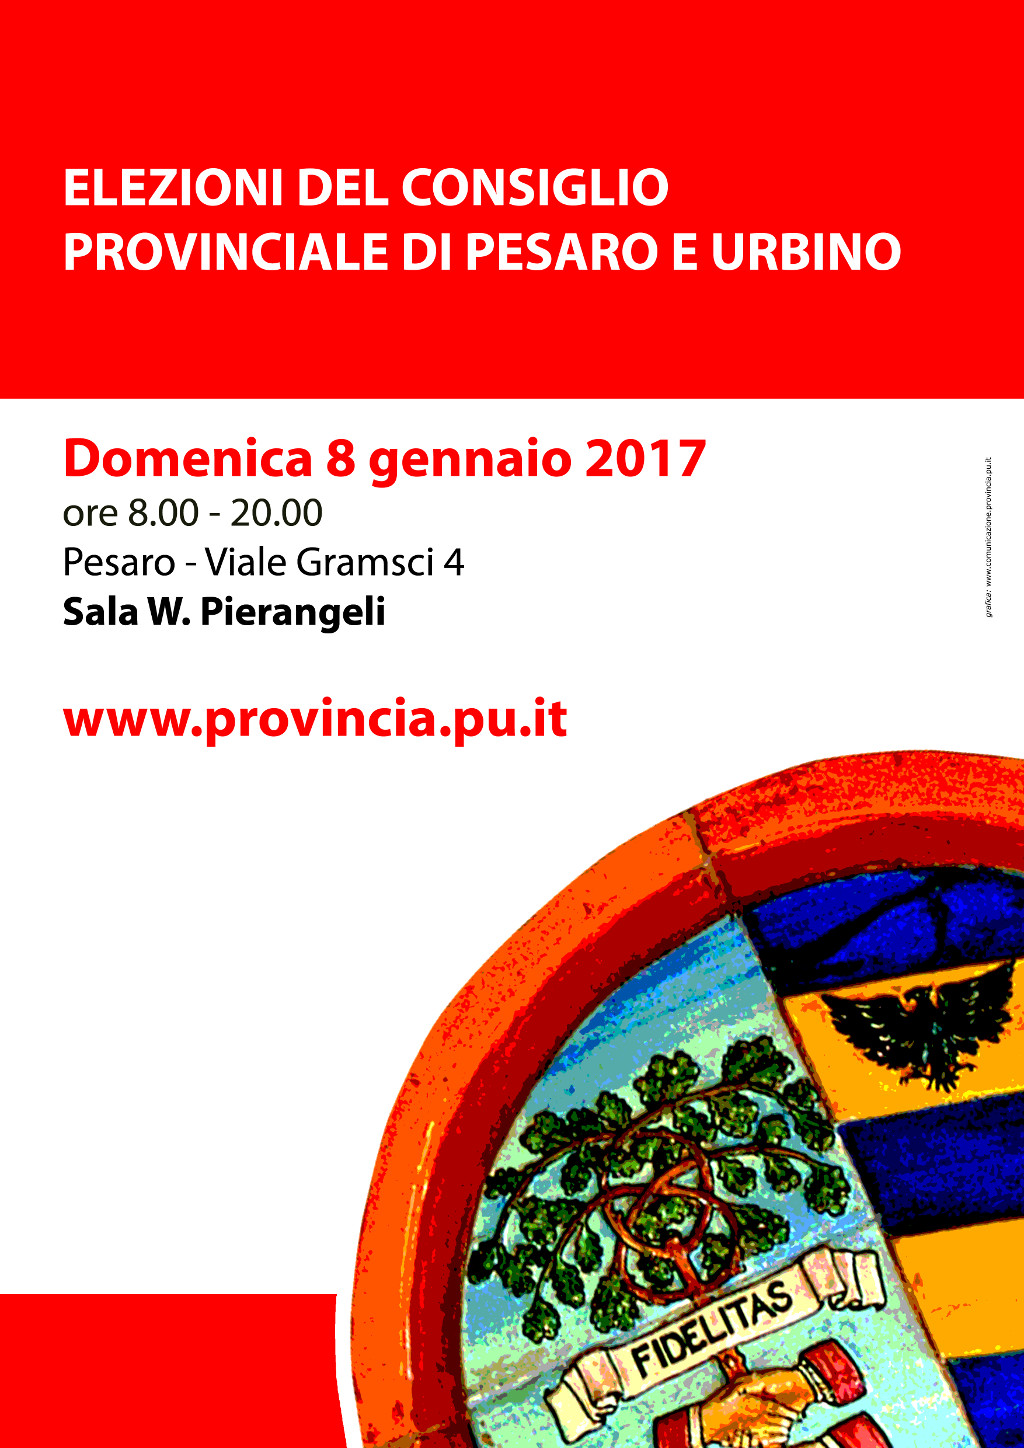 ELEZIONI DEL CONSIGLIO PROVINCIALE - 8 GENNAIO 2017 - dalle 8.00 alle 20.00 - Pesaro Viale Gramsci, 4 - Sala W. Pierangeli